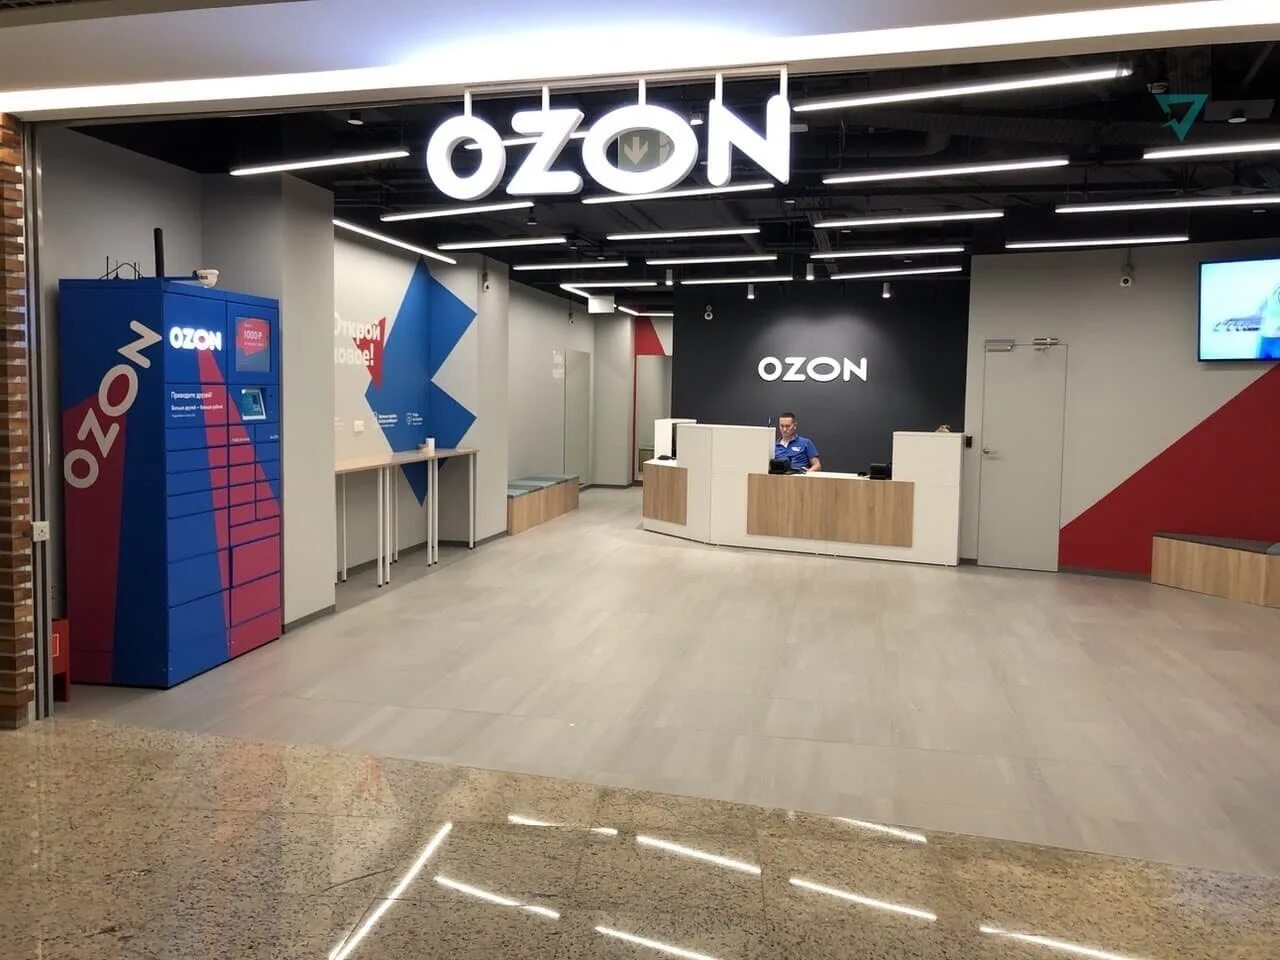 Ozon onelink. OZON. Озон магазин. Йящт. Озон в ТЦ.